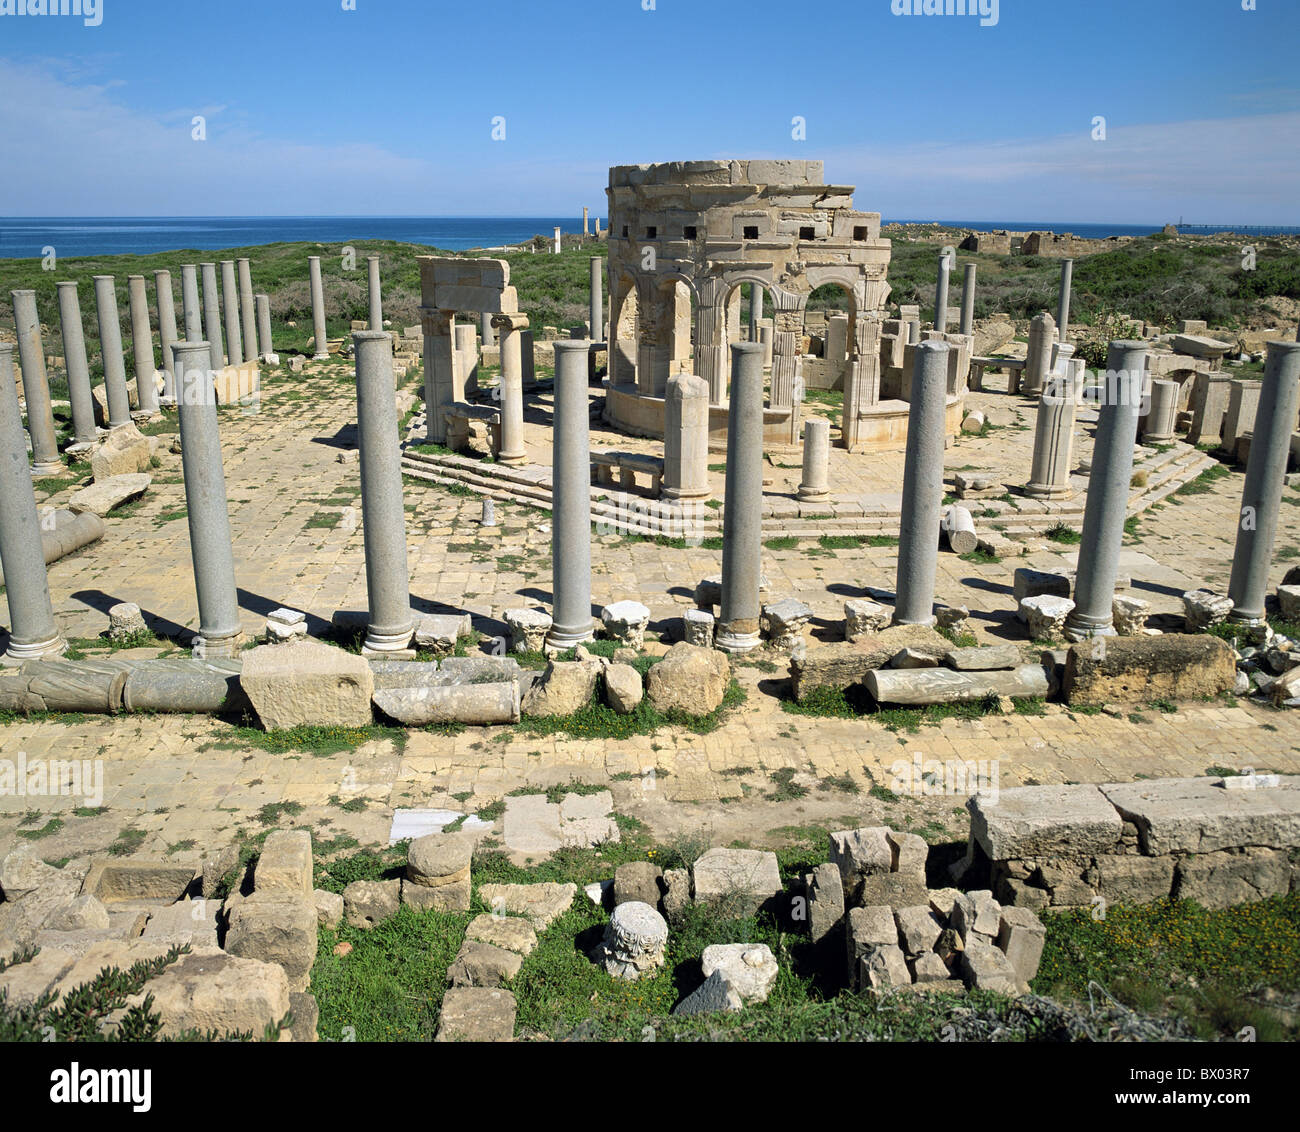 Un monde ancien antiquité coast Leptis Magna Libye romaine vestiges romains de la mer marché aperçu des colonnes Banque D'Images